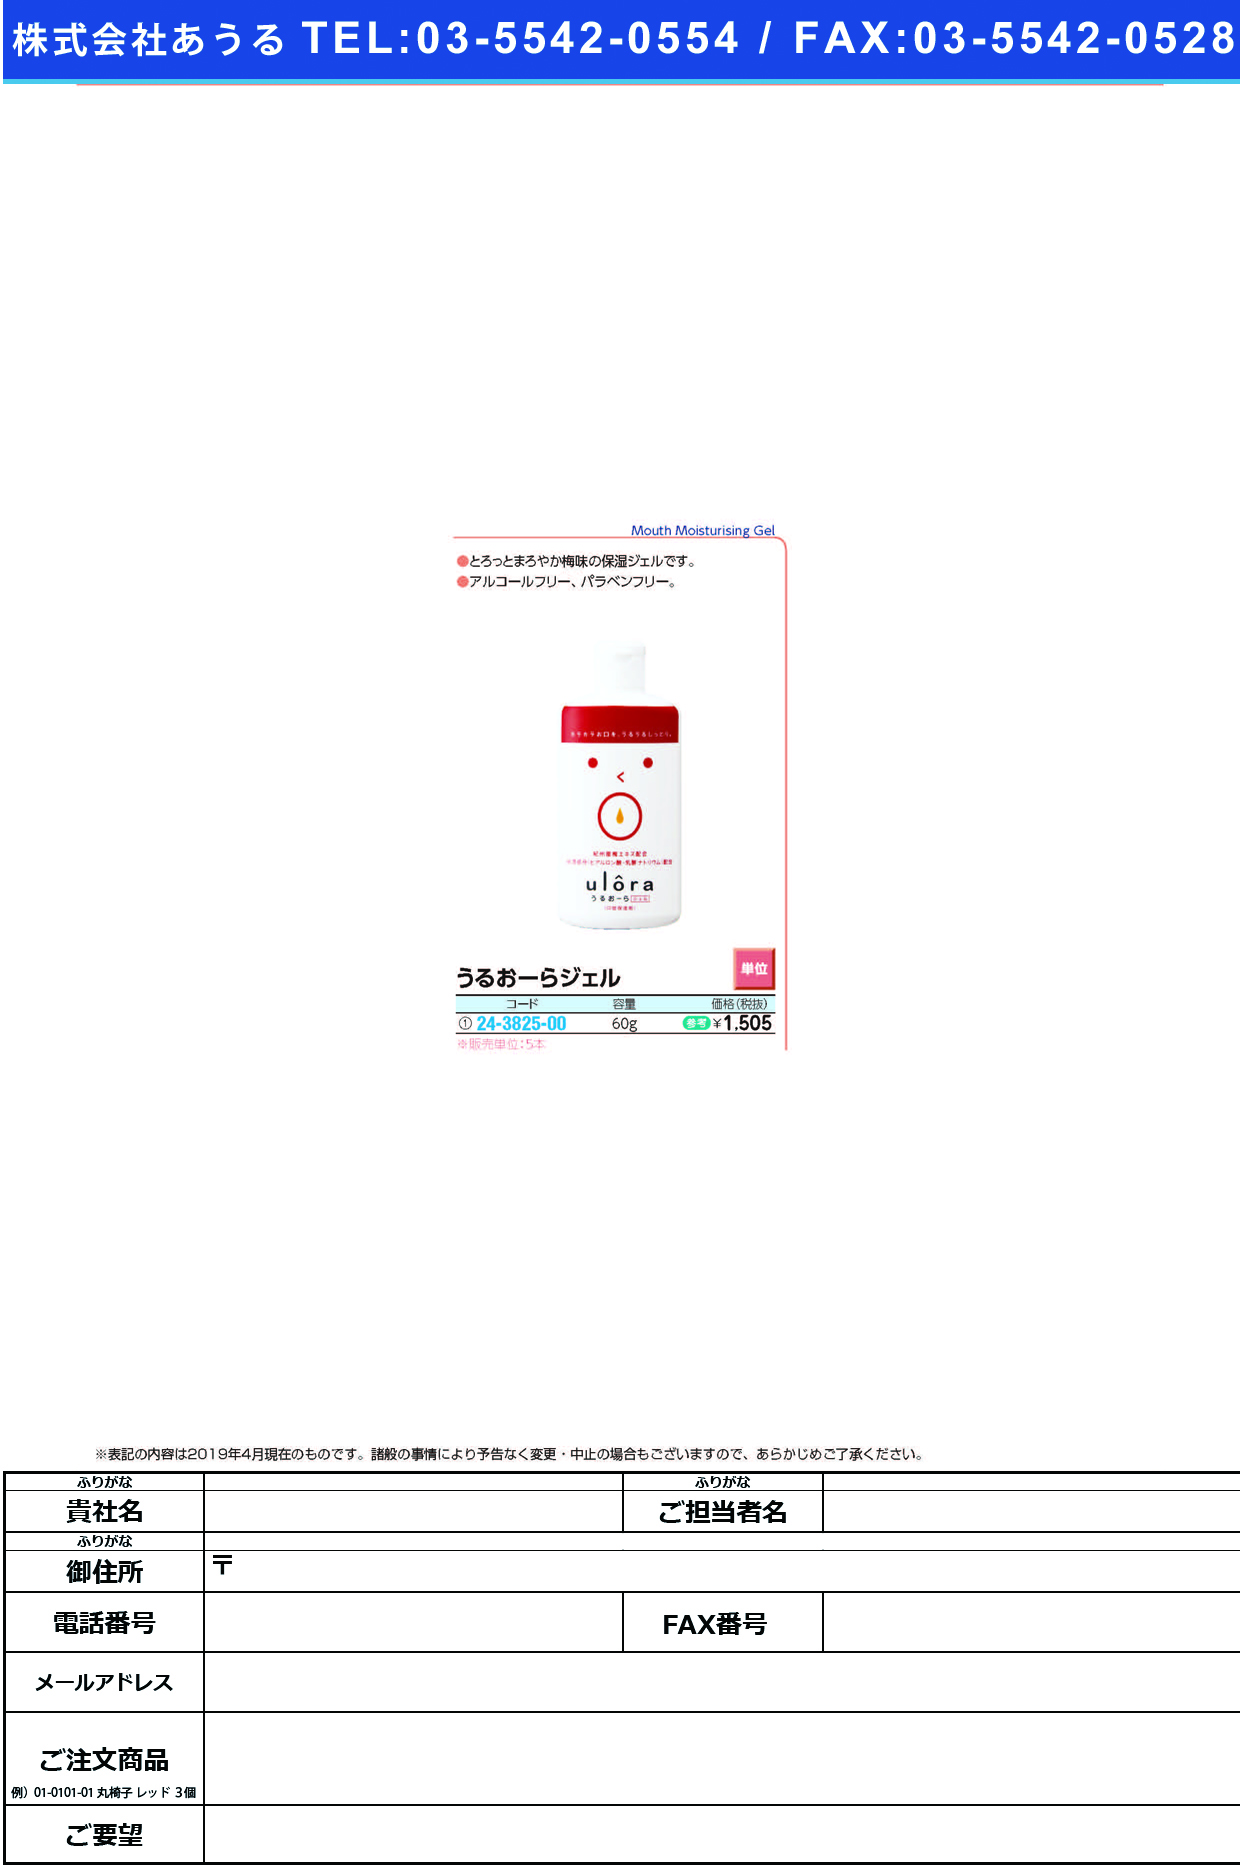 (24-3825-00)うるおーらジェル 60G ｳﾙｰﾗｼﾞｪﾙ【5本単位】【2019年カタログ商品】